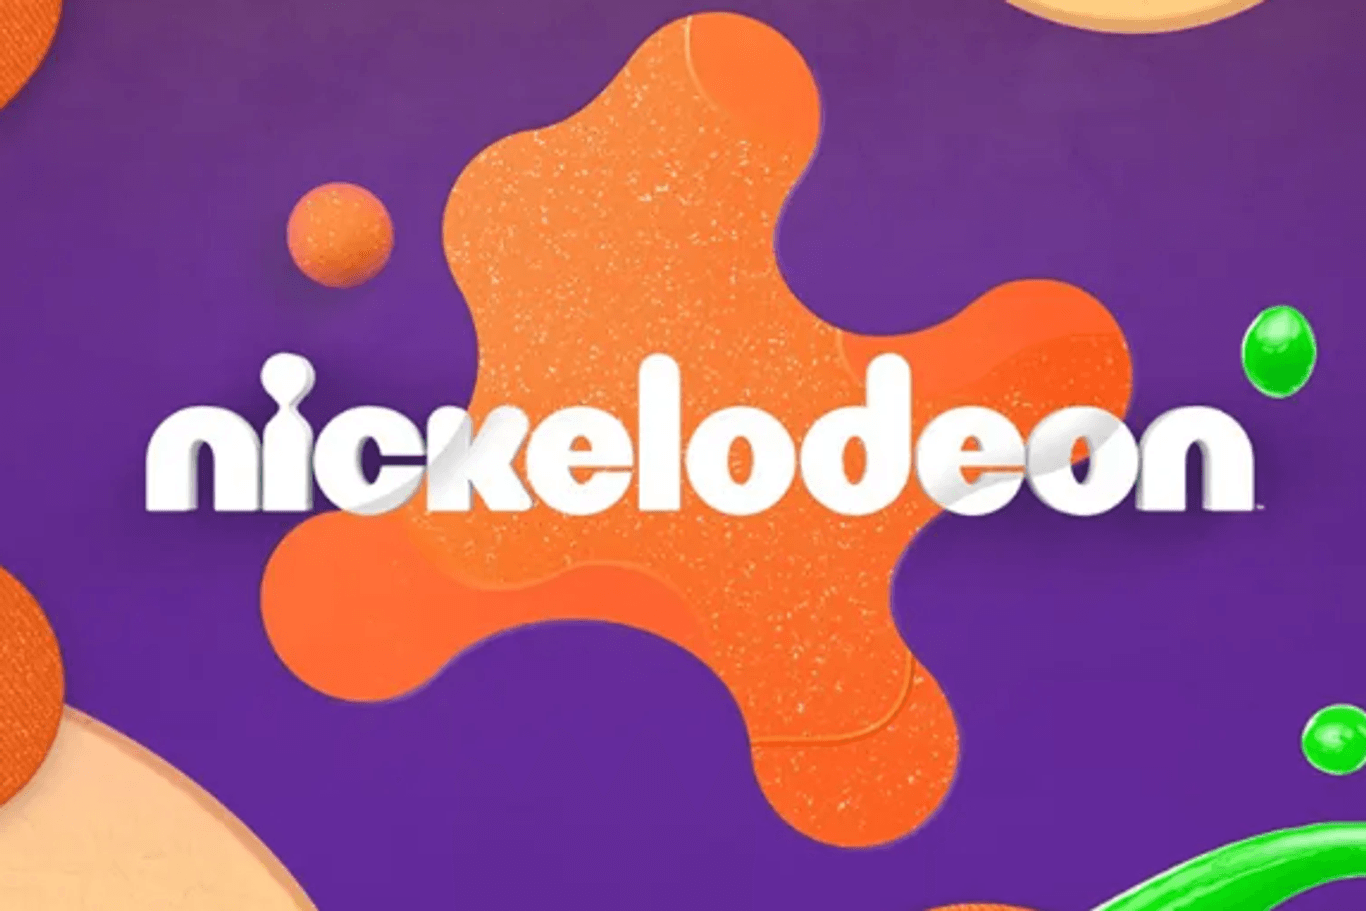 Nickelodeon: Der Kindersender bekommt ein neues Logo.